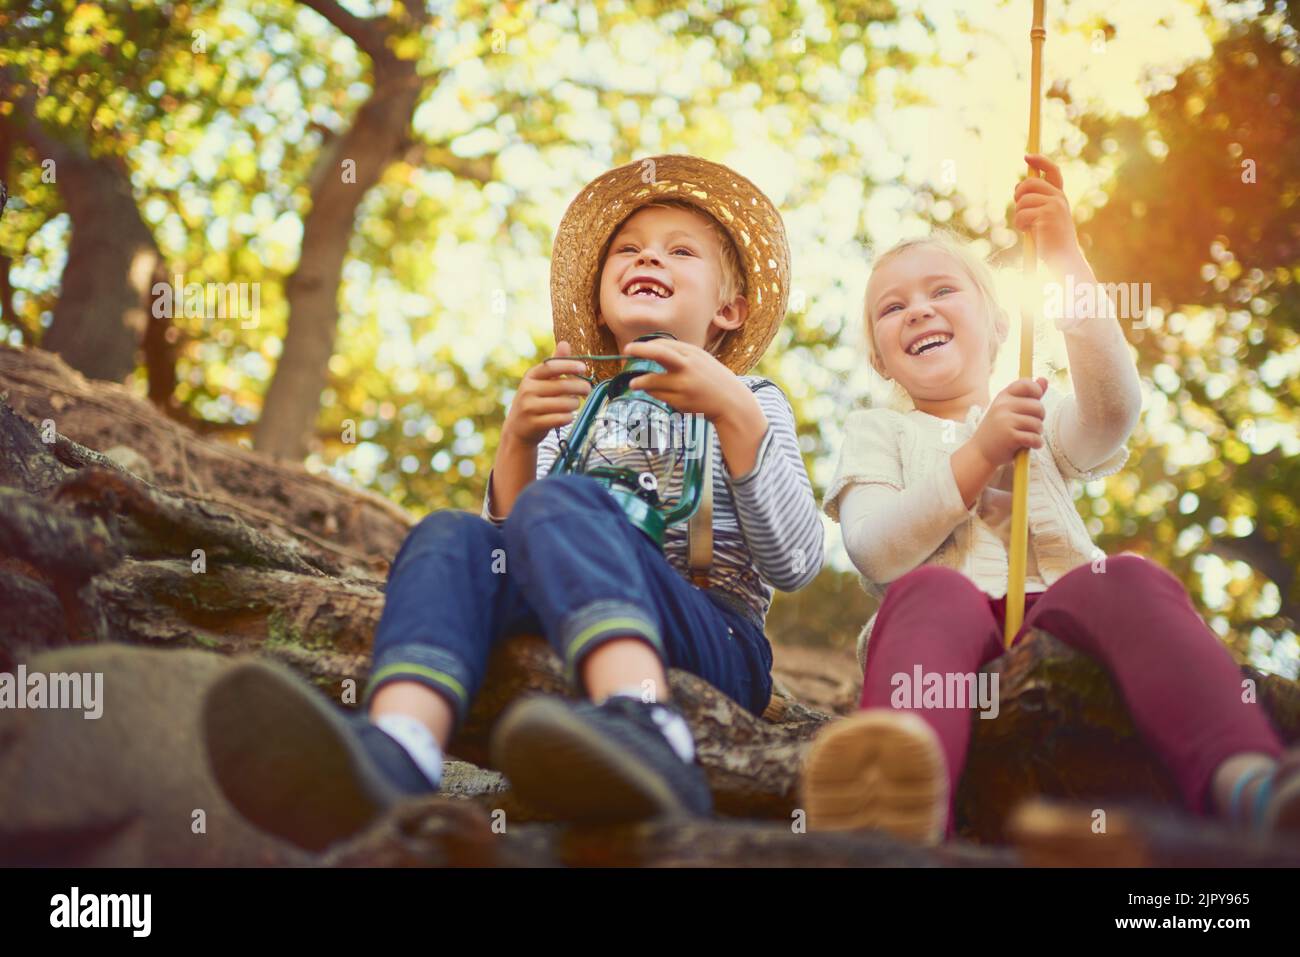 Spielen im Freien ist wichtig für eine Entwicklung von Kindern. Zwei kleine Kinder spielen im Freien zusammen. Stockfoto